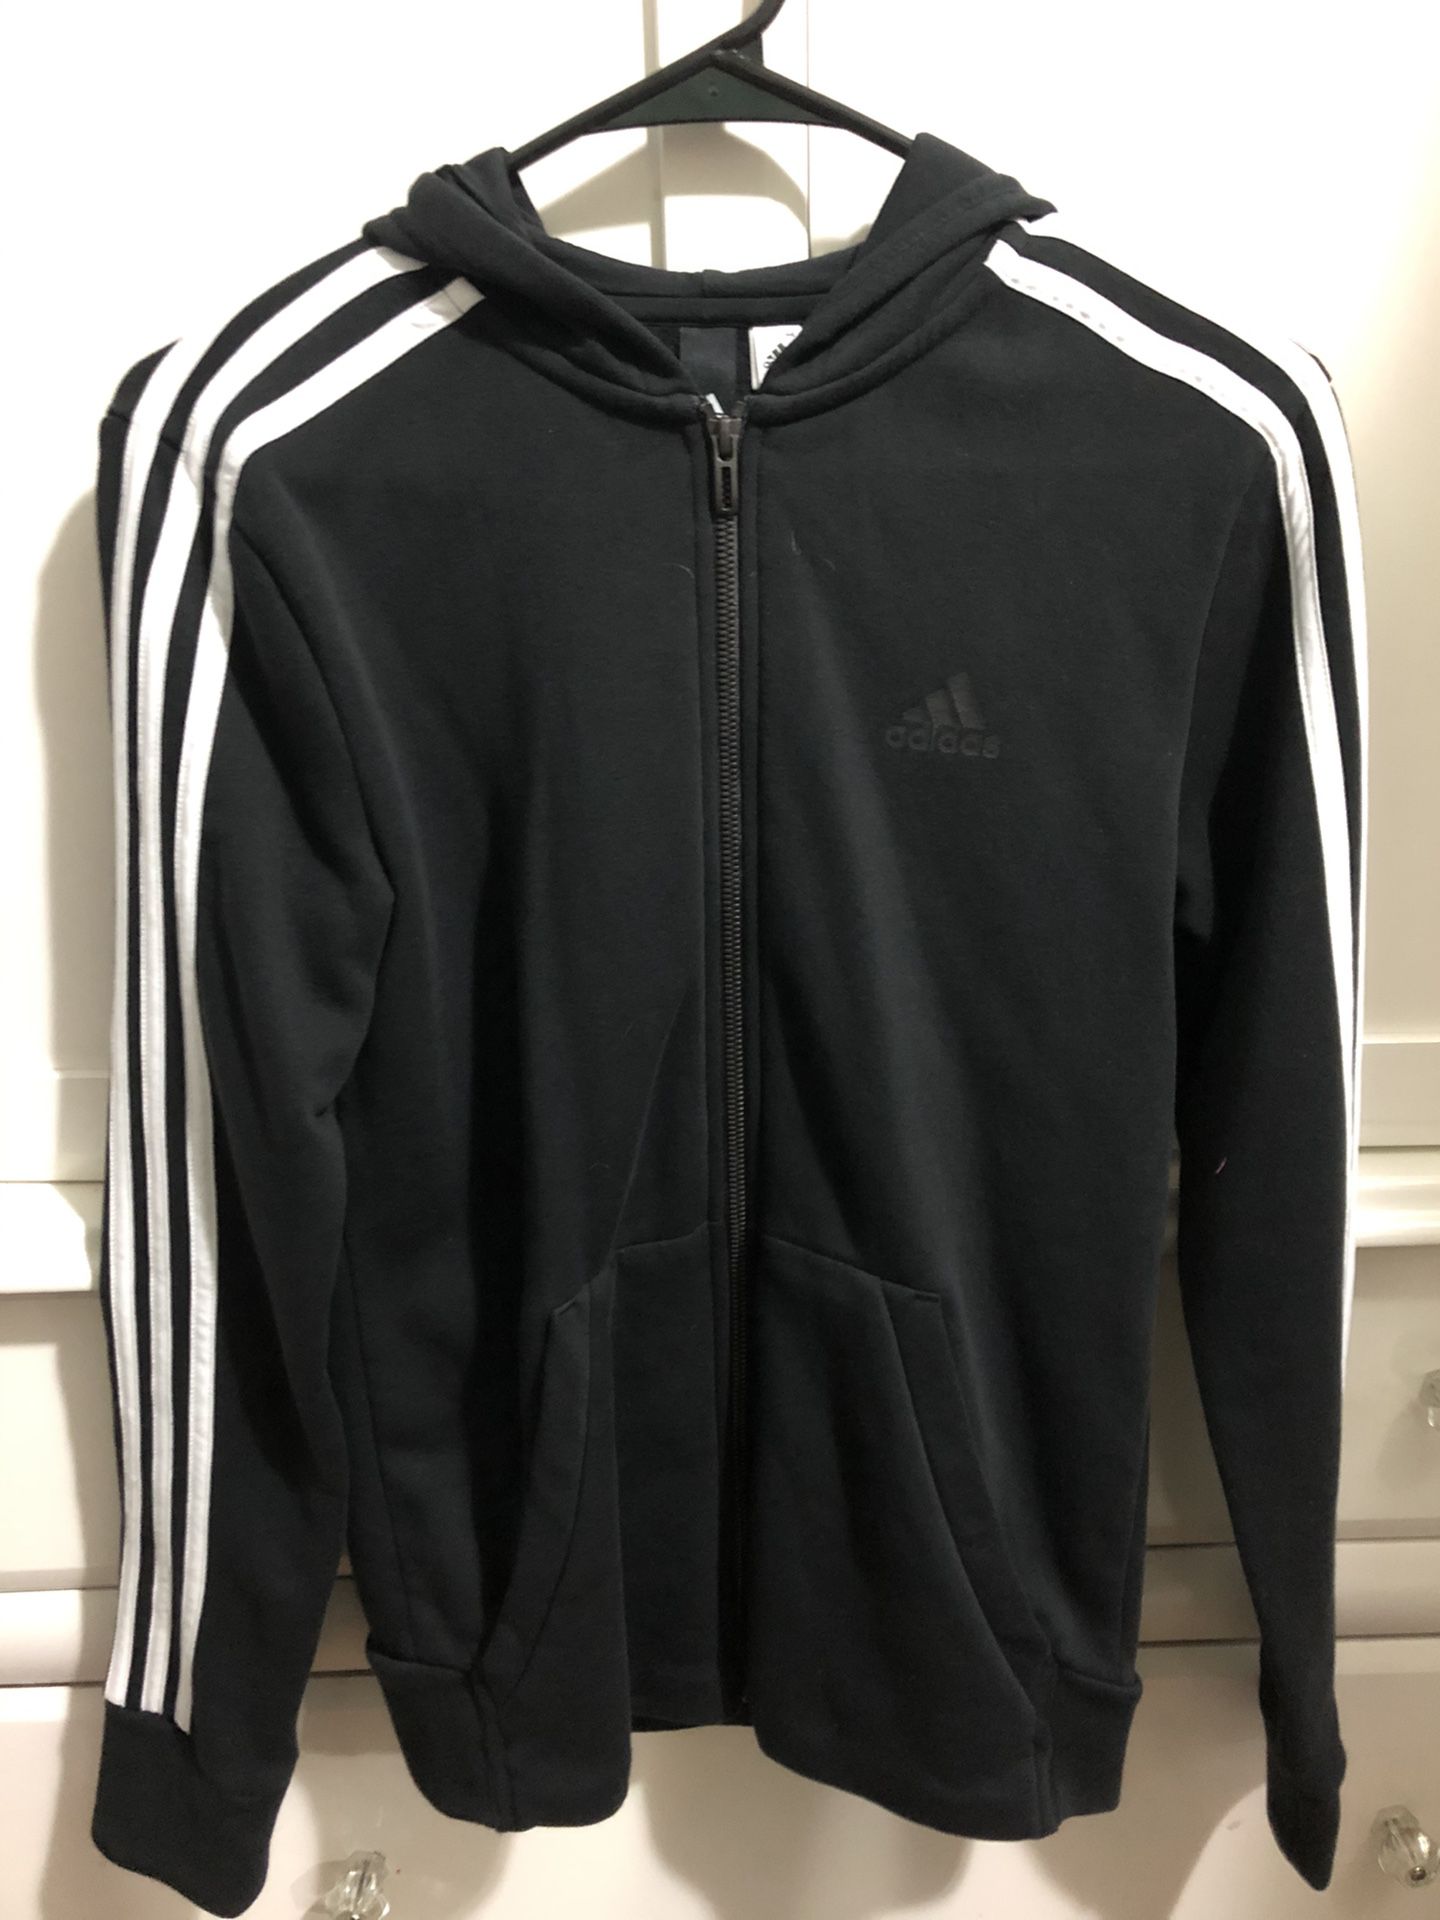 Adidas black zip up hoodie